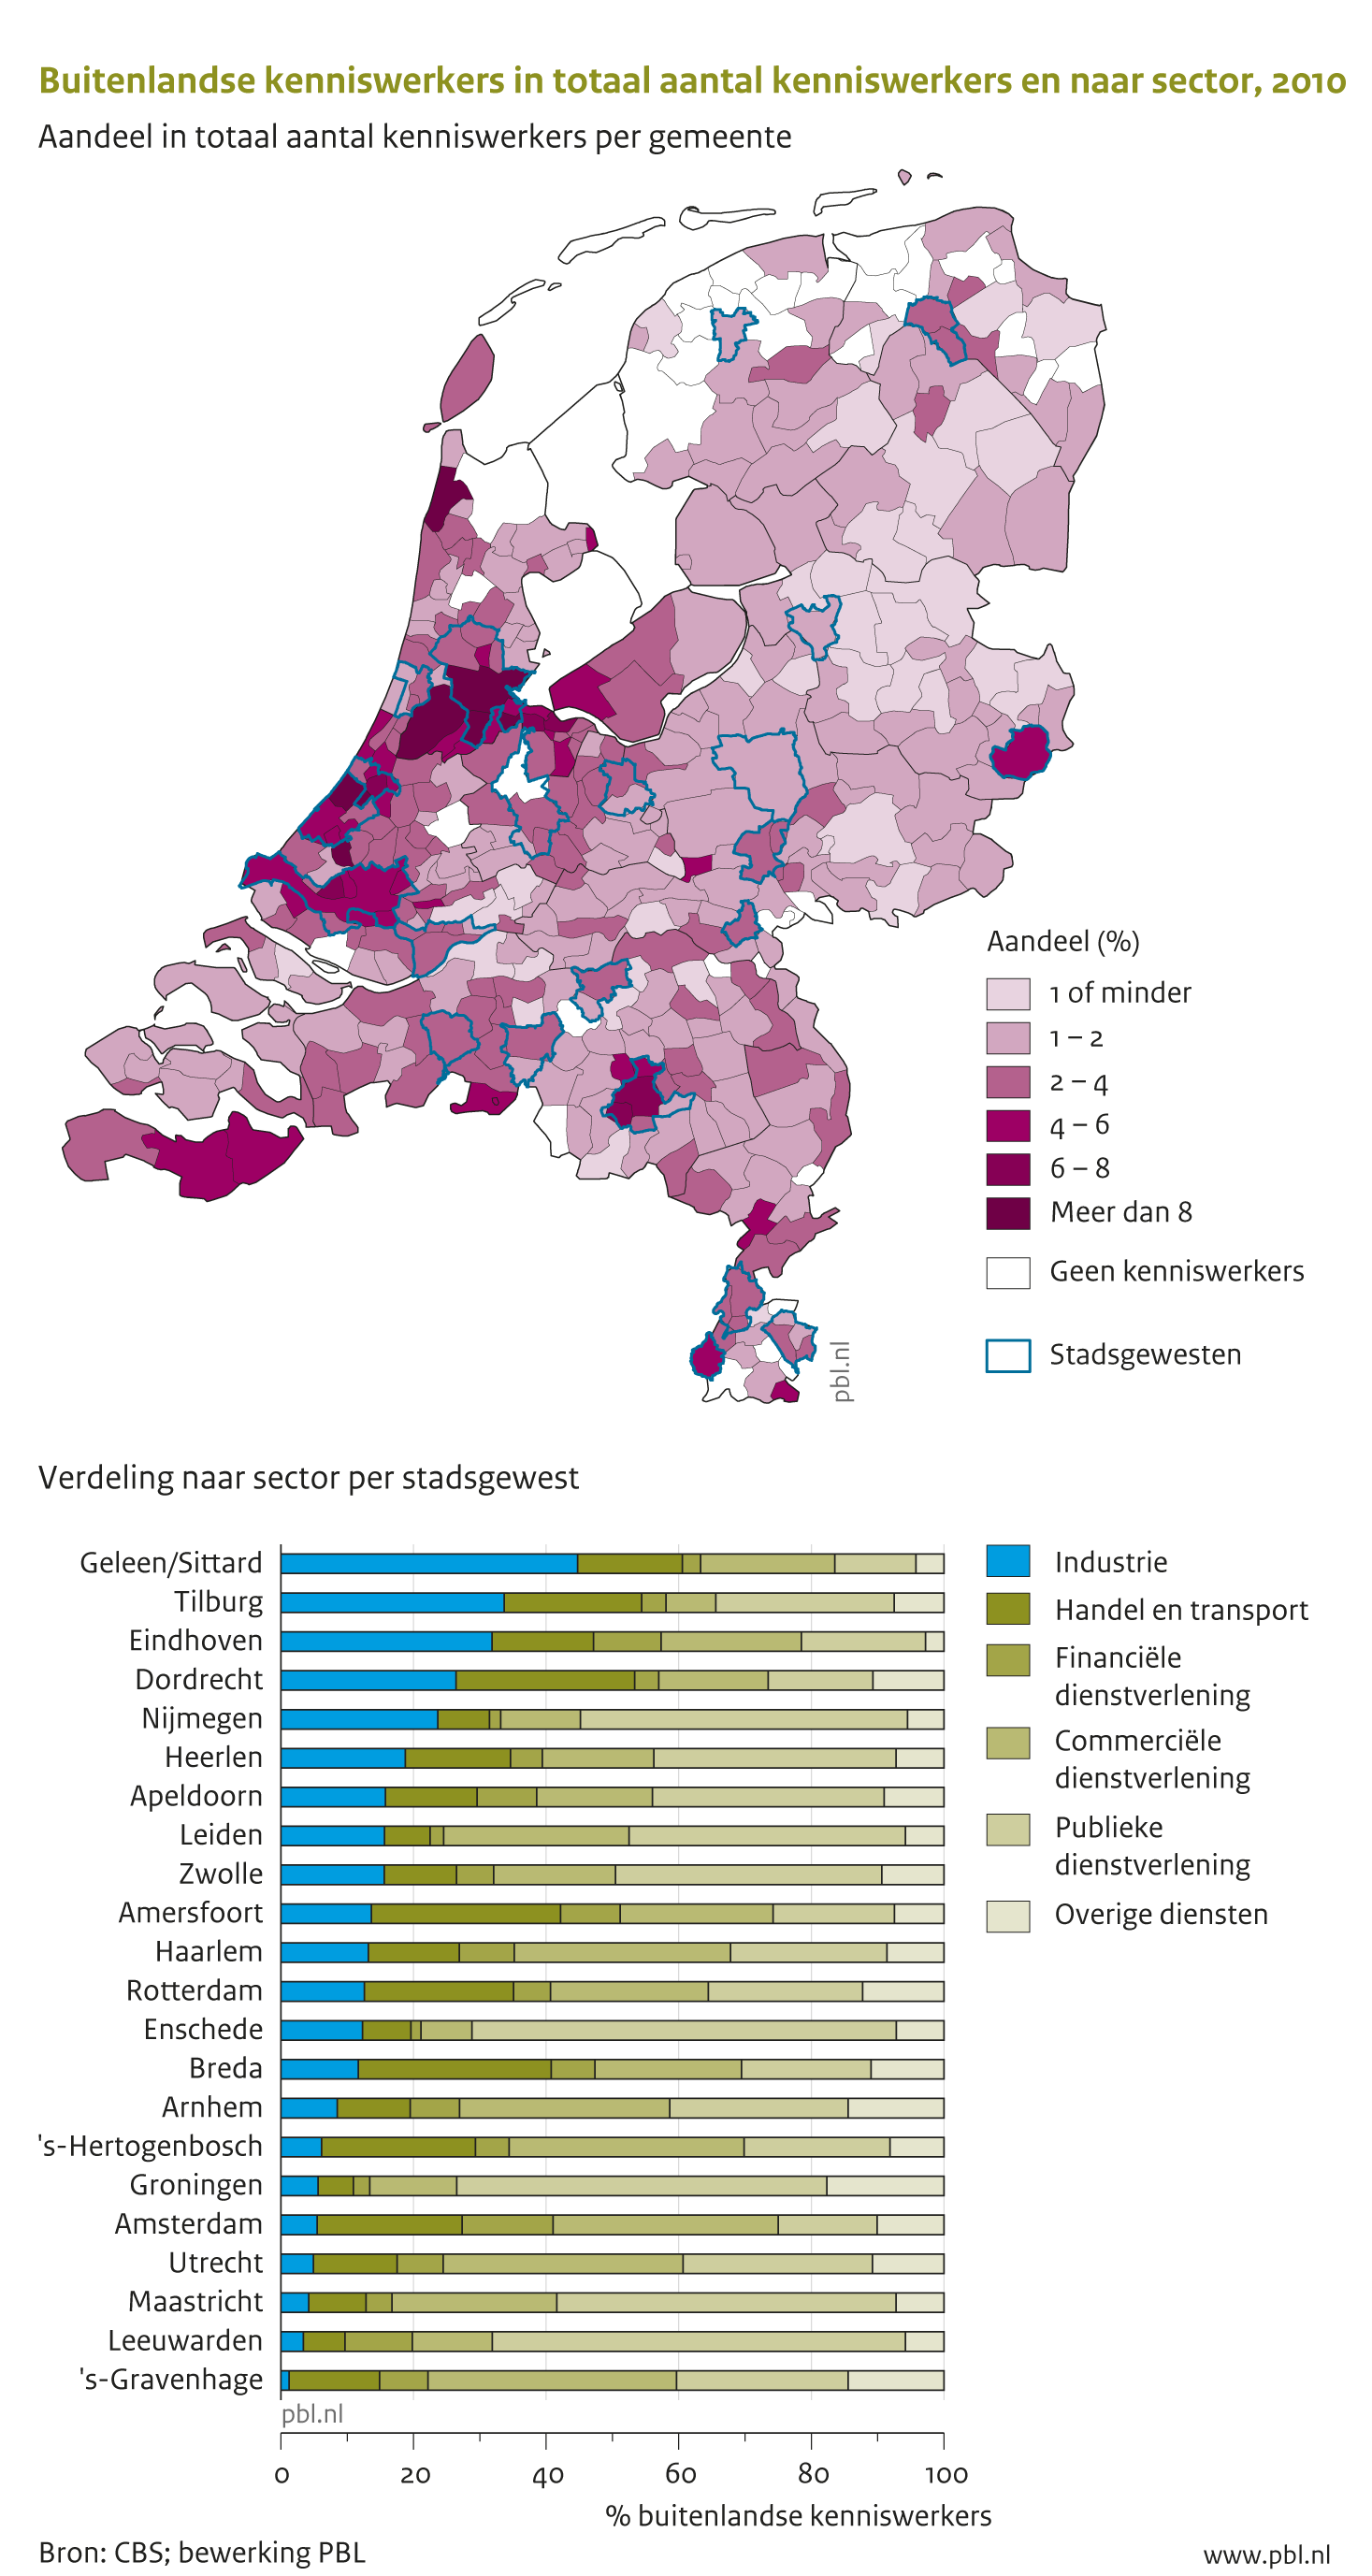 Buitenlandse kenniswerkers wonen en werken vooral in de regio’s Amsterdam, Den Haag, Rotterdam, Utrecht en Eindhoven. Ze zijn vooral werkzaam in de zakelijke diensten, handel en gezondheidszorg.